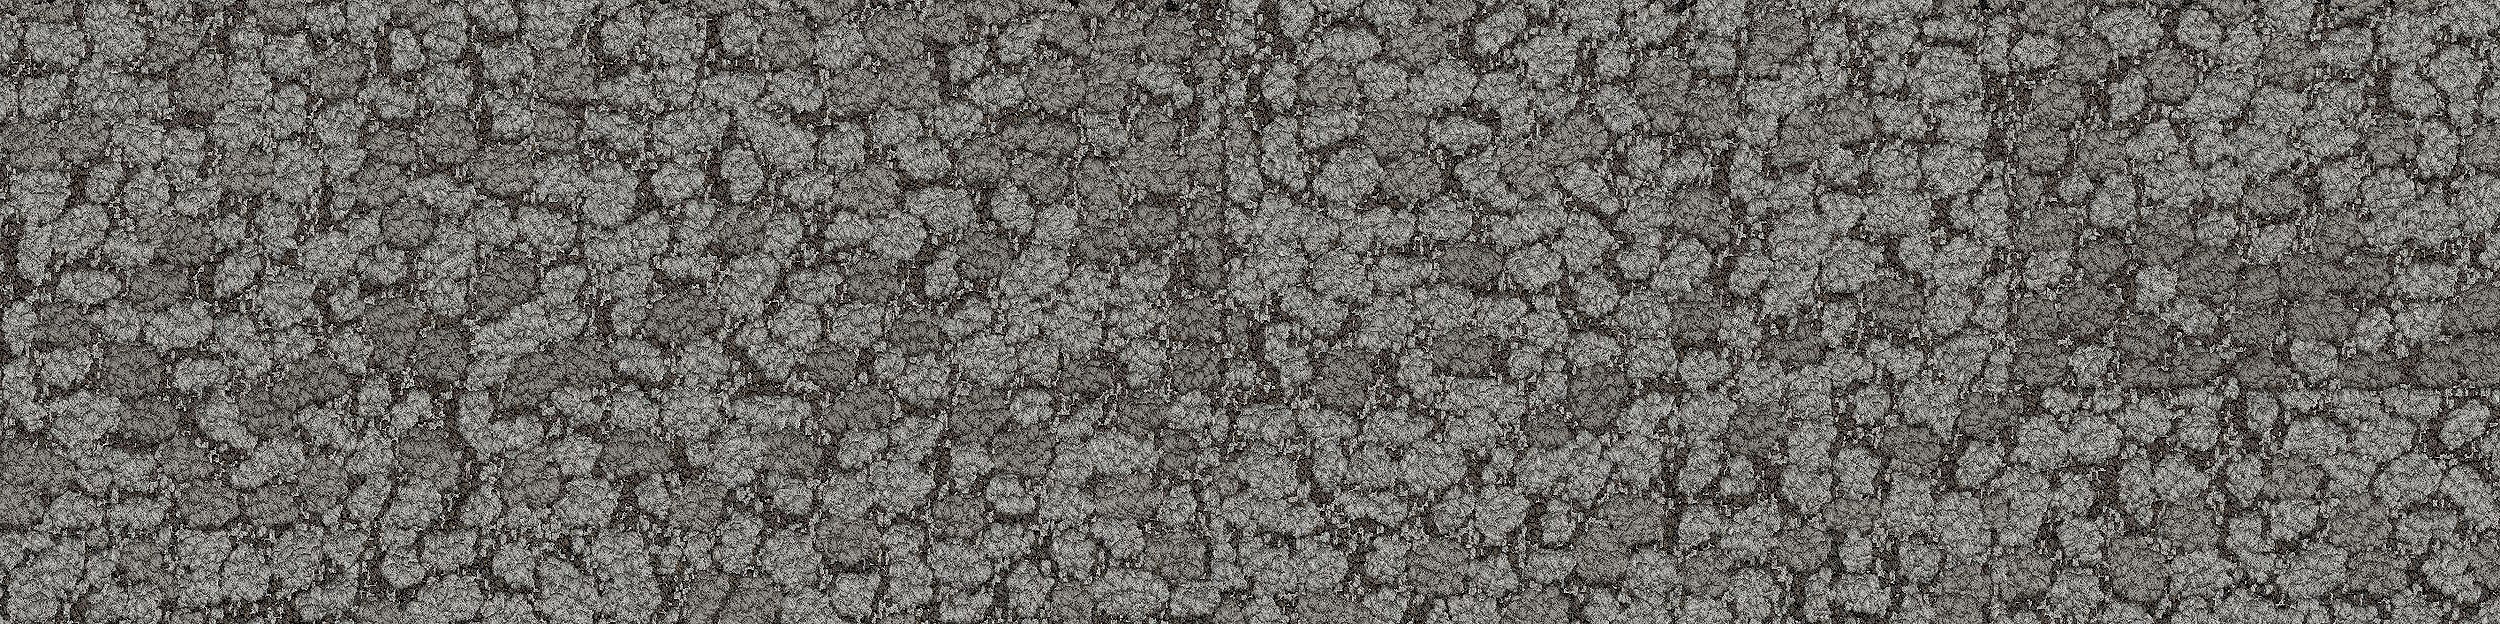 HN840 Carpet Tile In Nickel image number 13